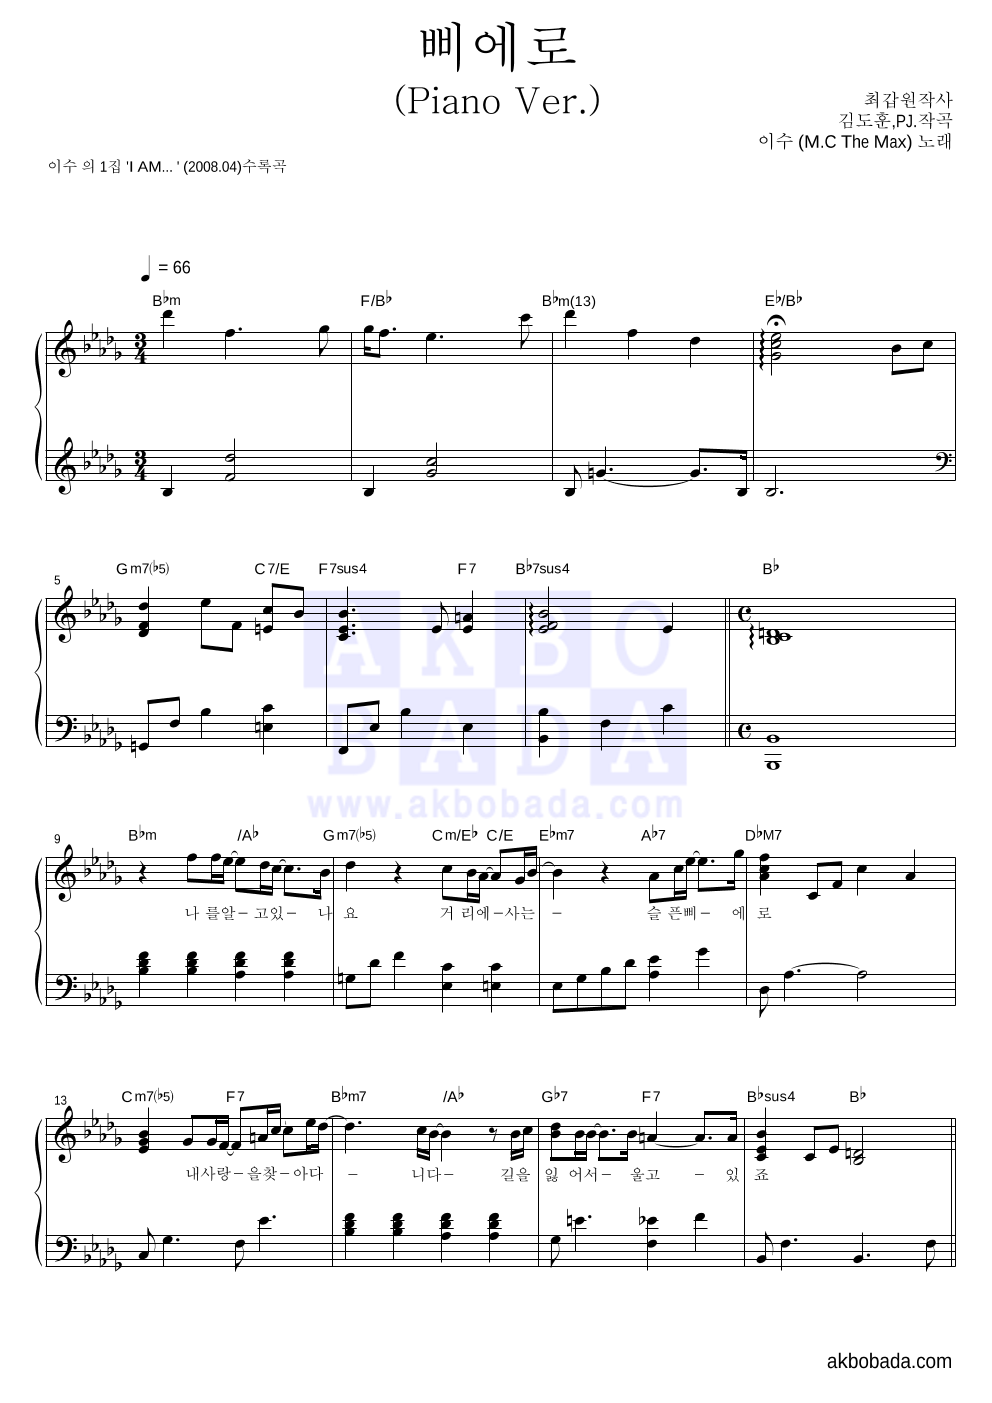 이수(엠씨 더 맥스) - 삐에로(Piano Ver.) 피아노 2단 악보 